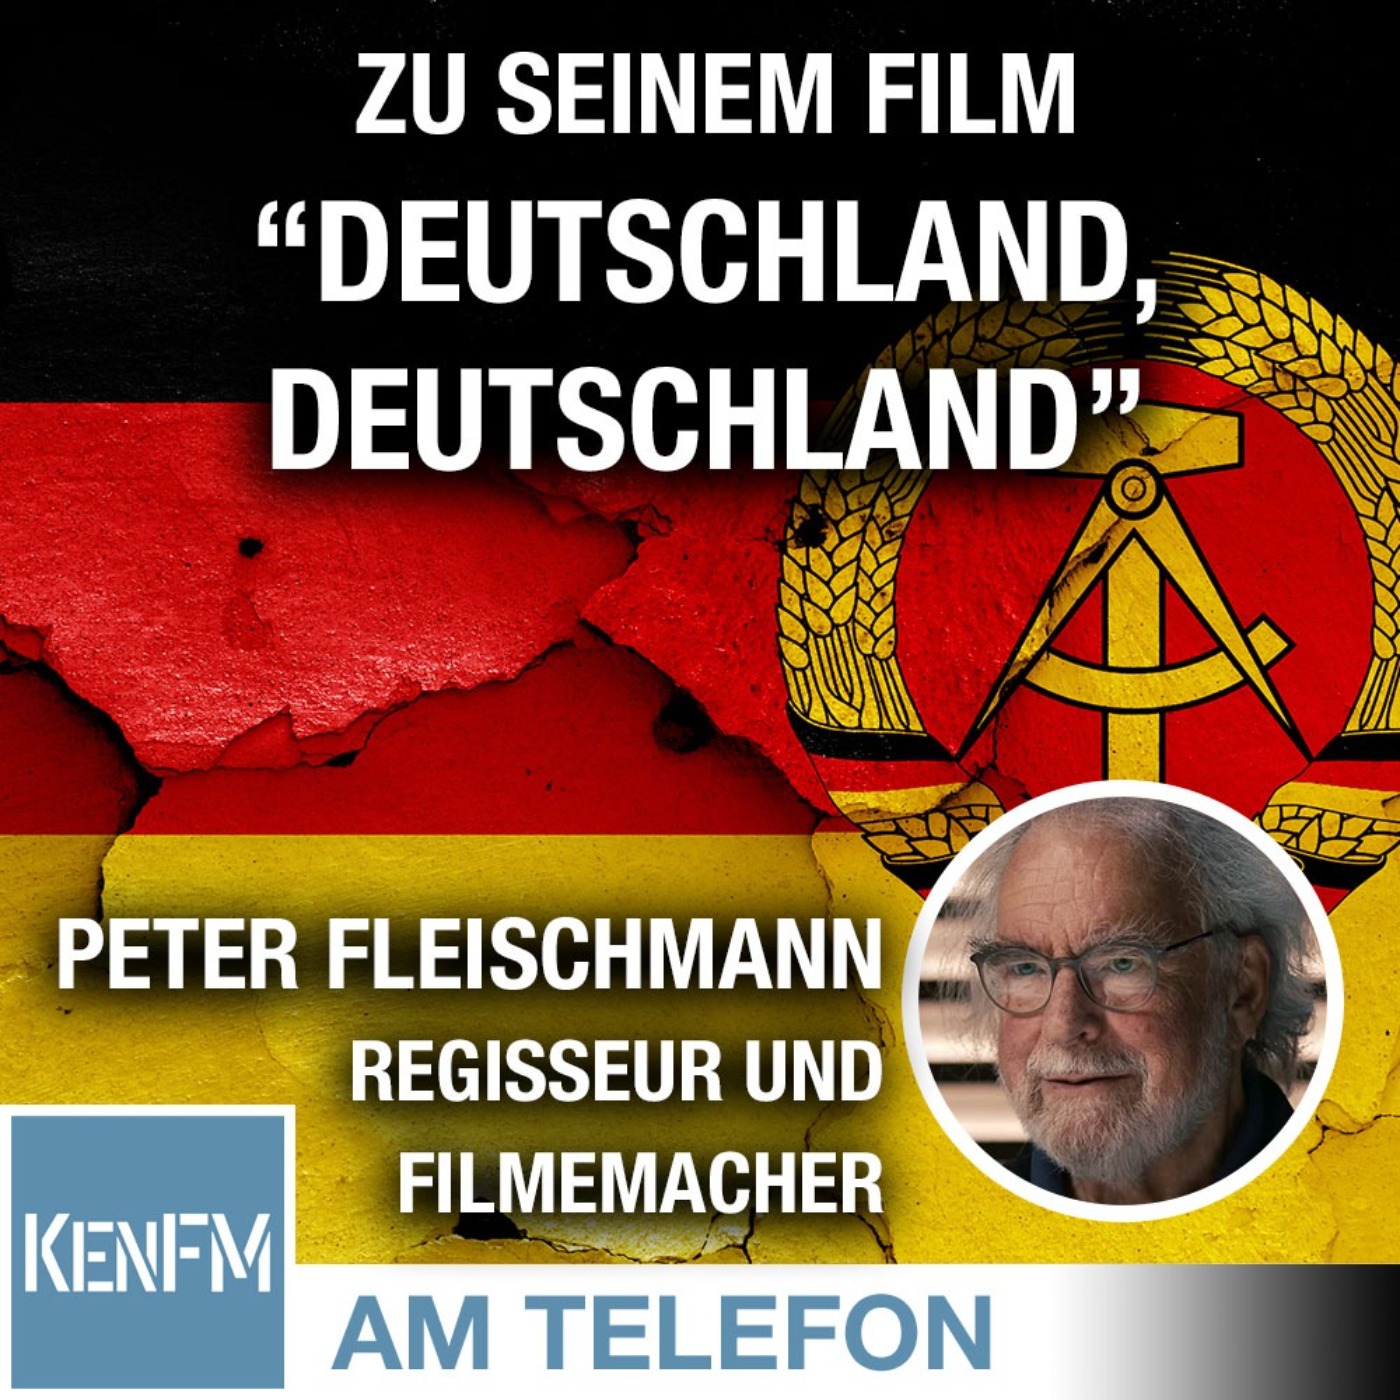 Am Telefon zu seinem Film “Deutschland, Deutschland”: Peter Fleischmann